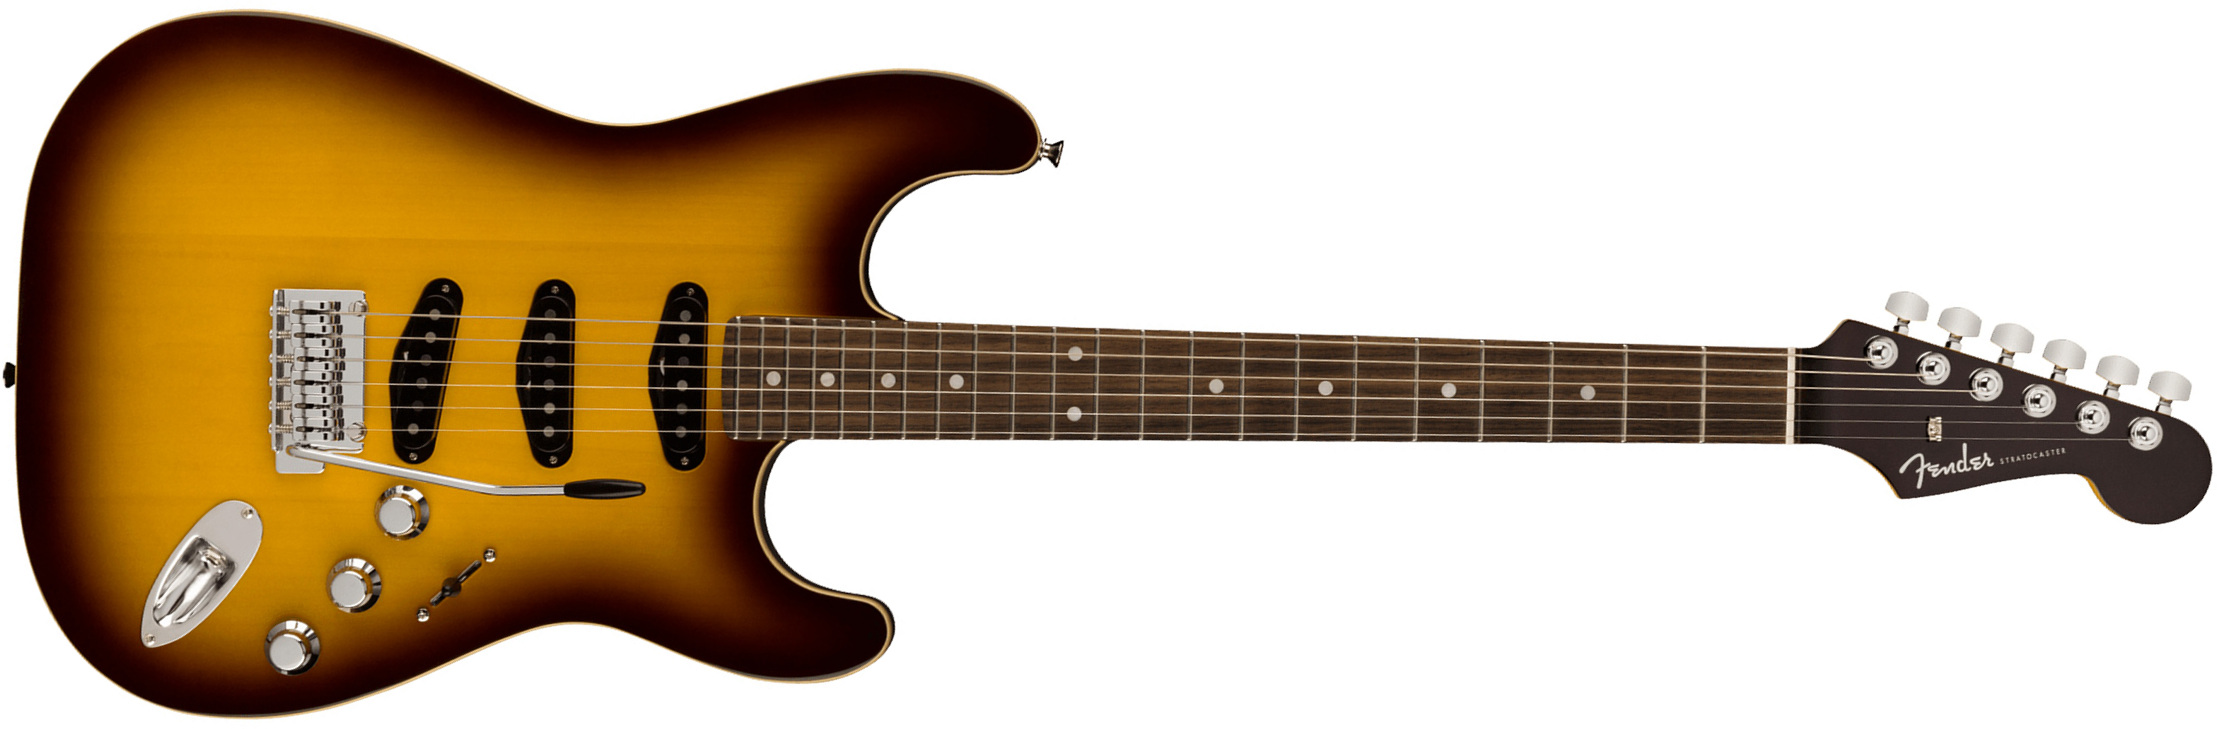 Fender Strat Aerodyne Special Jap 3s Trem Rw - Chocolate Burst - Guitare Électrique Forme Str - Main picture